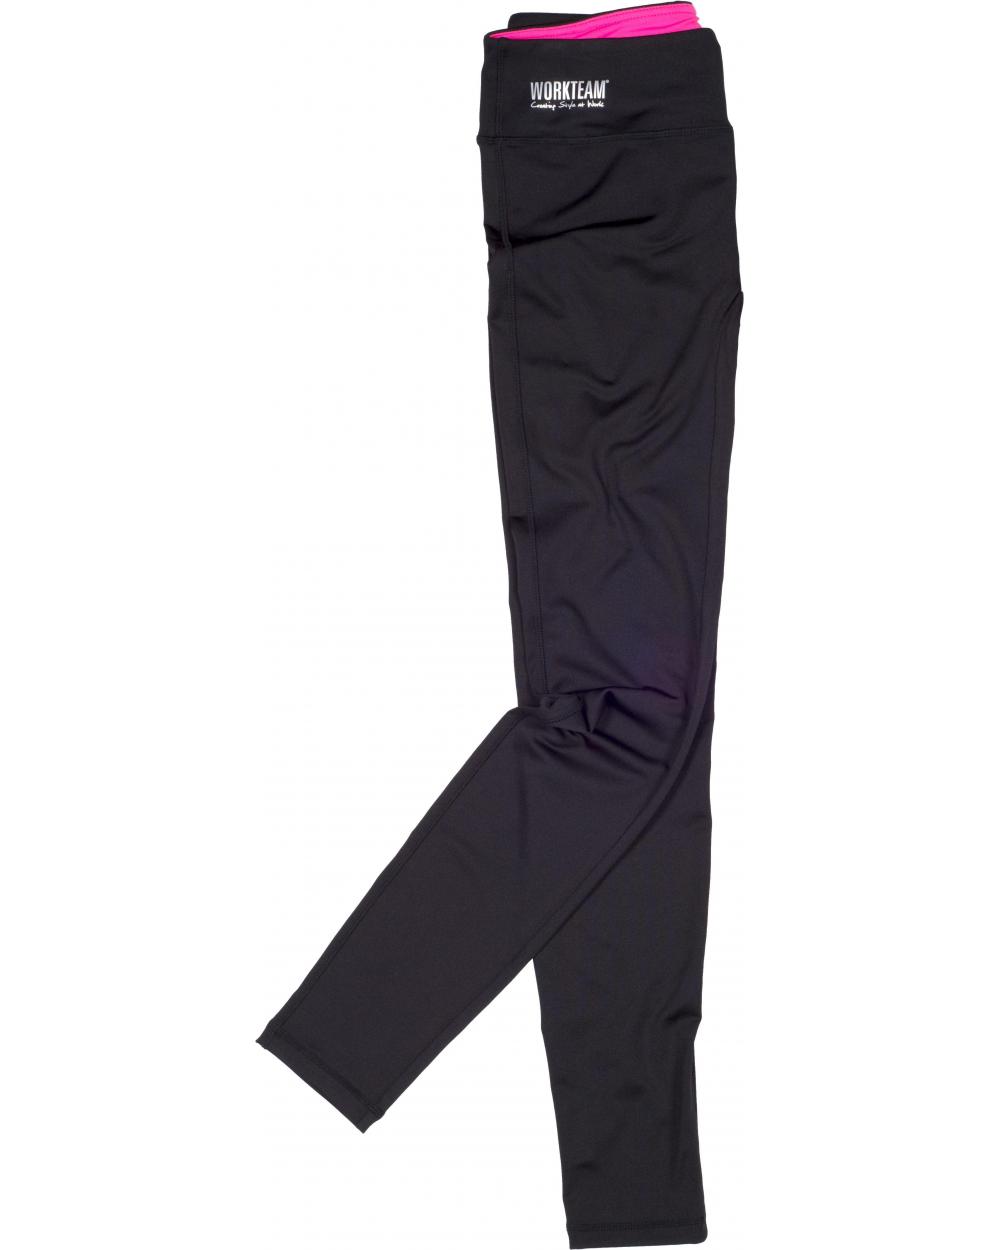 Comprar Leggin ajustados elasticos S7501 Negro+Rosa Fluor workteam delante